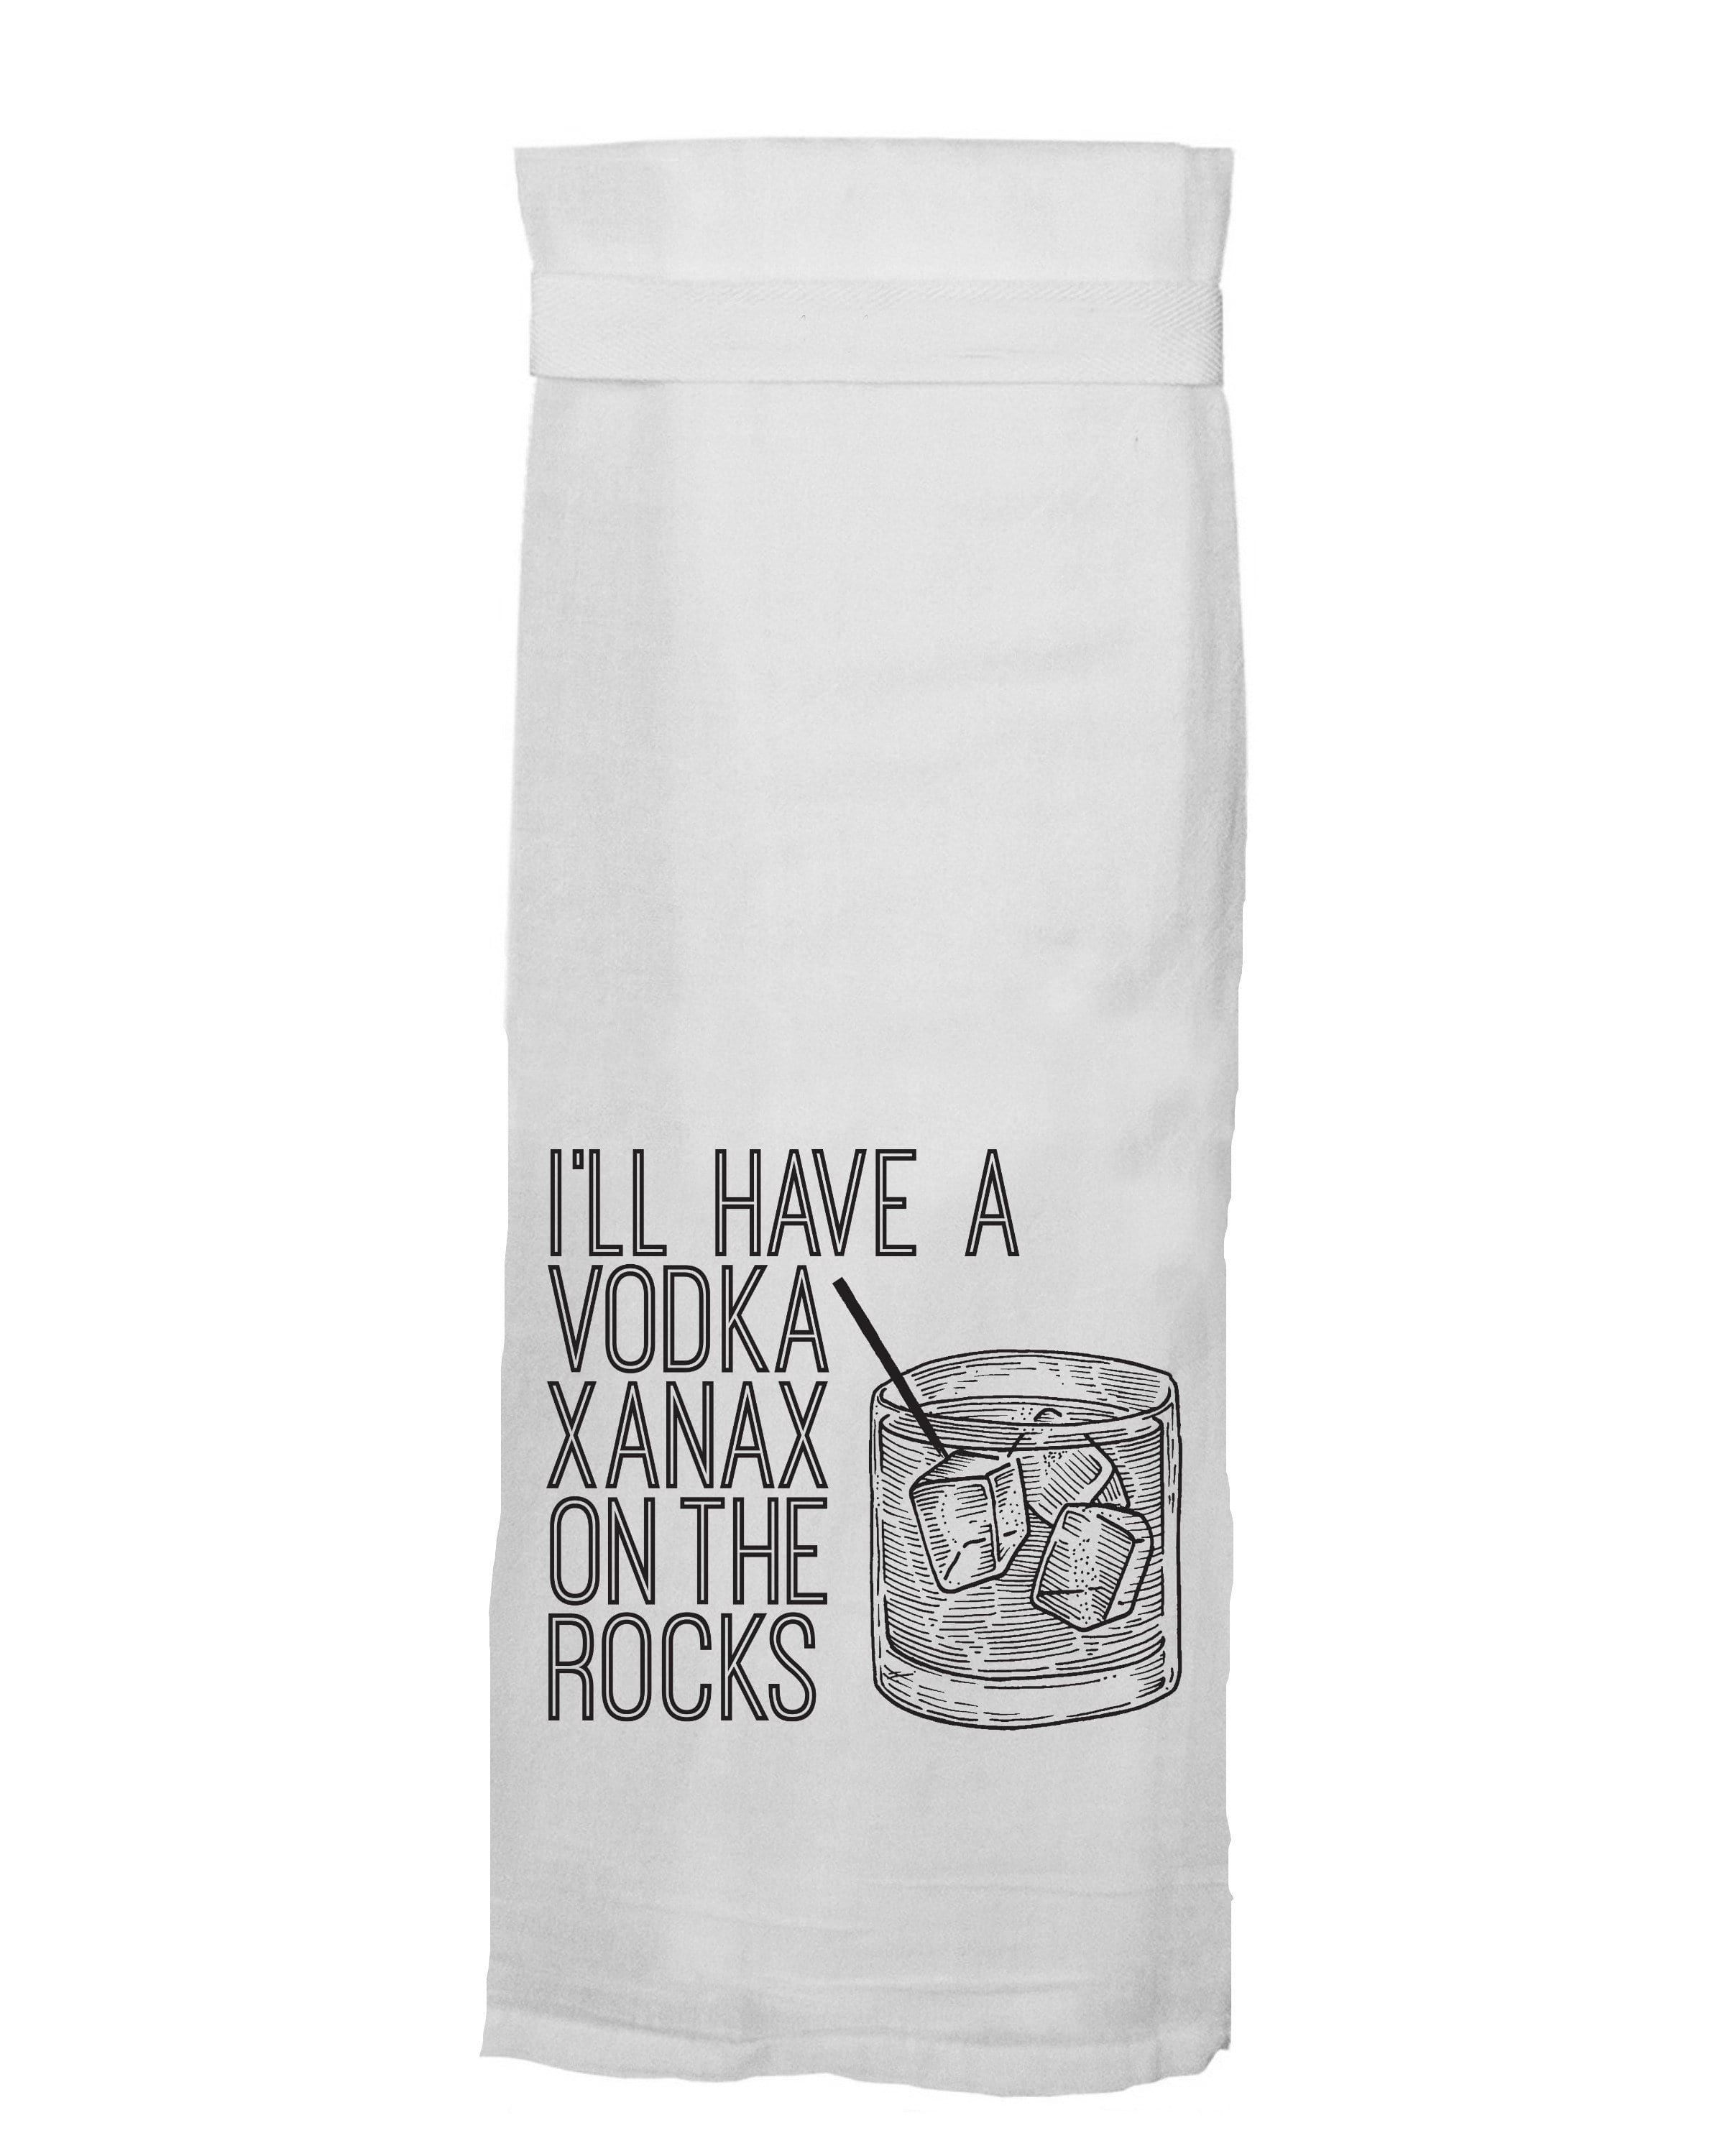 Vodka Xanax Tea Towel